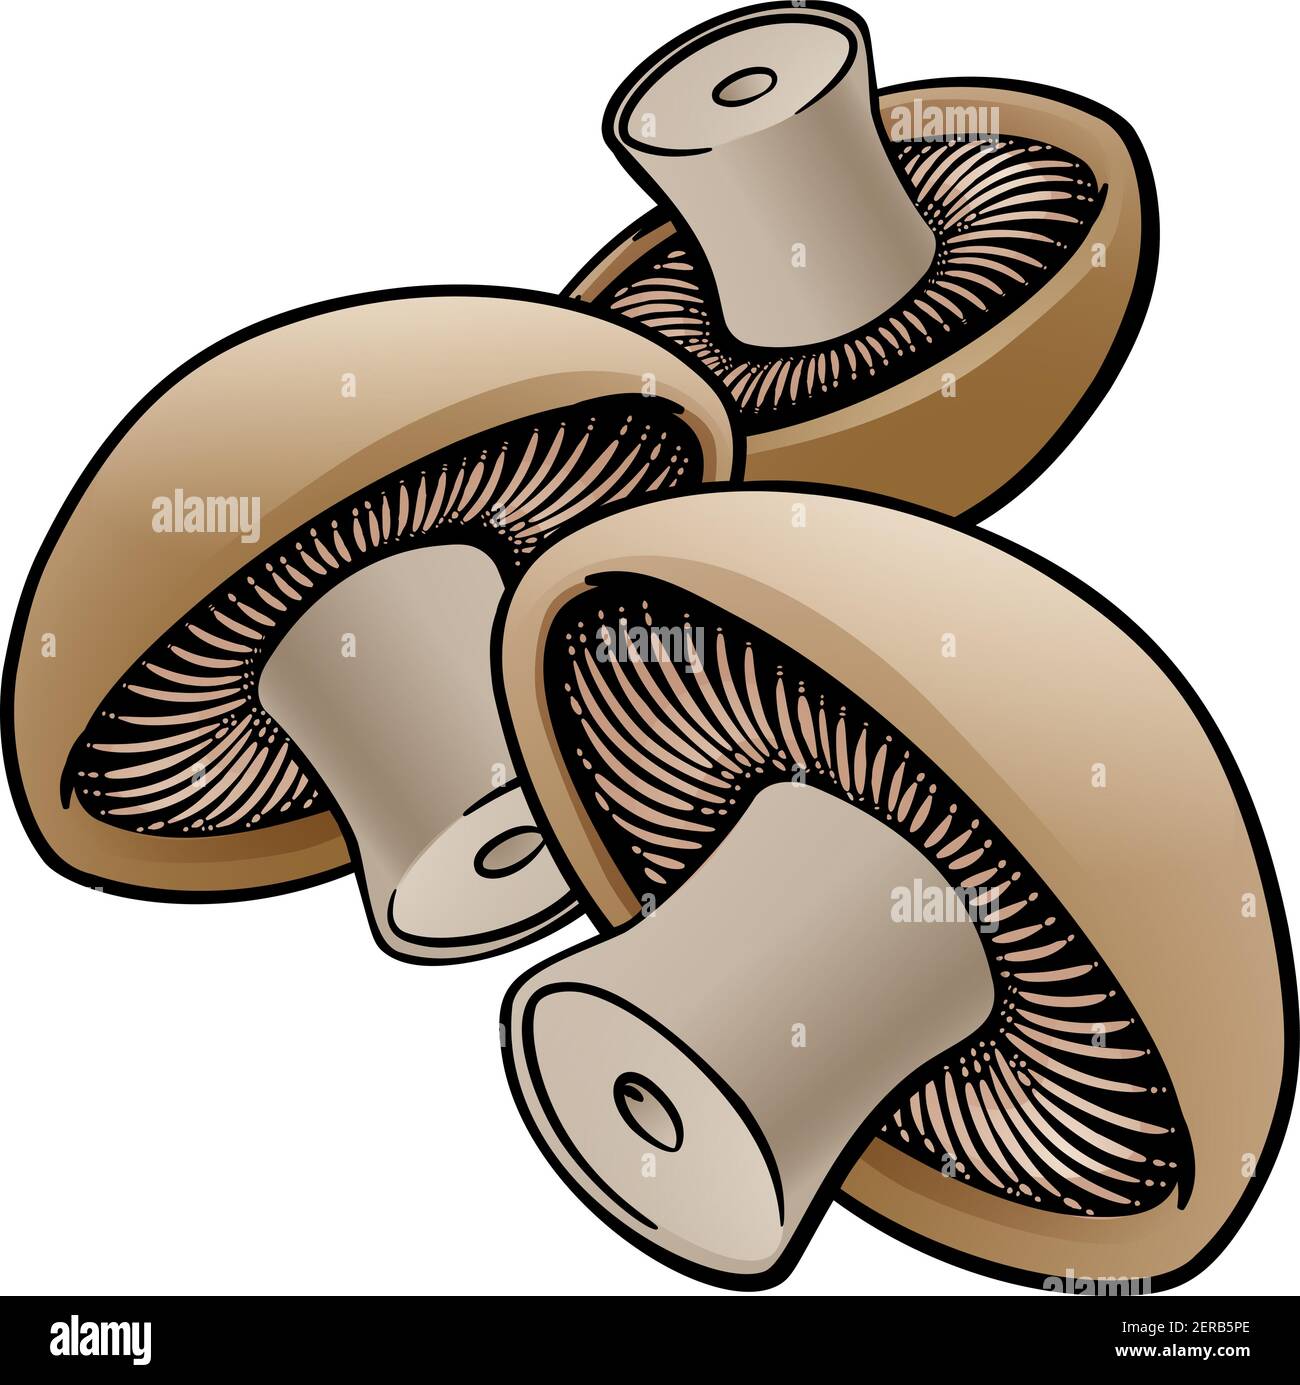 Mushroom Vegetable Cartoon Illustration Stock Vector Image & Art - Alamy